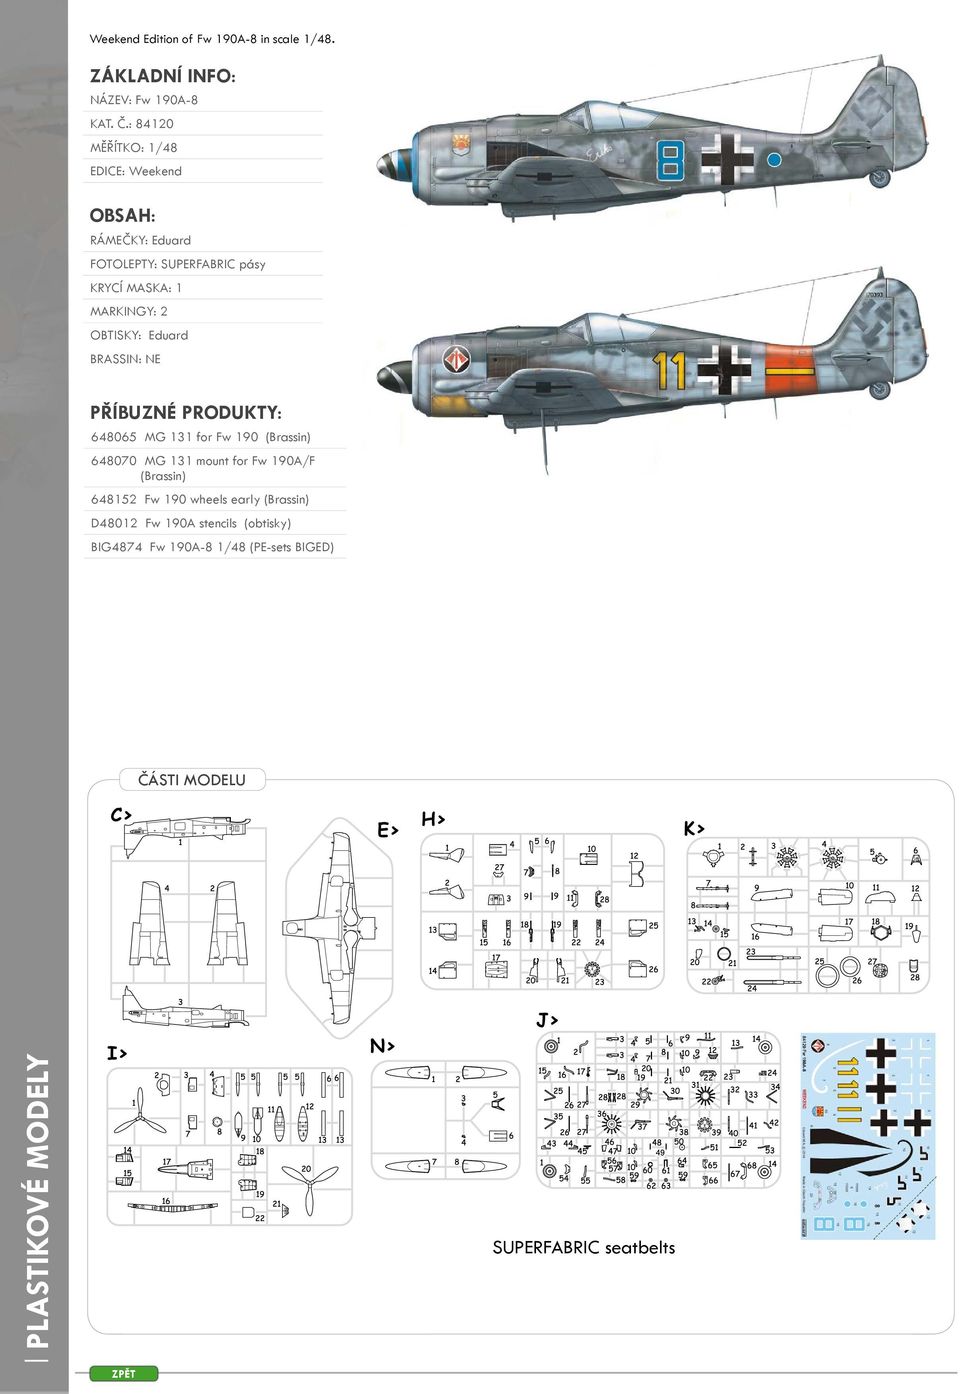 OBTISKY: Eduard BRASSIN: NE PŘÍBUZNÉ PRODUKTY: 648065 MG 131 for Fw 190 (Brassin) 648070 MG 131 mount for Fw 190A/F